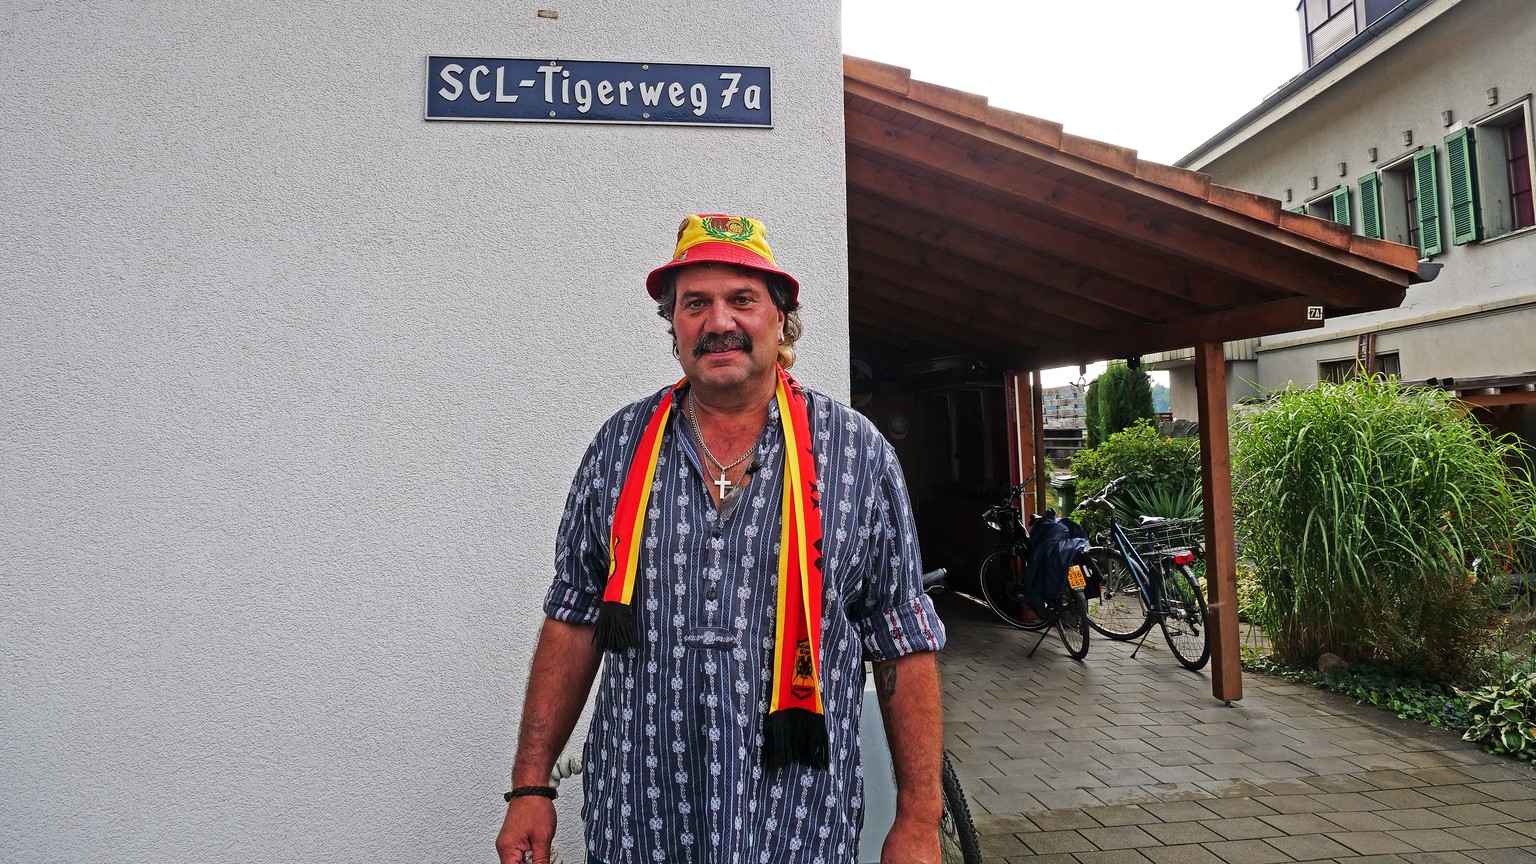 SCL-Tigerweg 7a, da ist «Zöggeler» zu Hause.